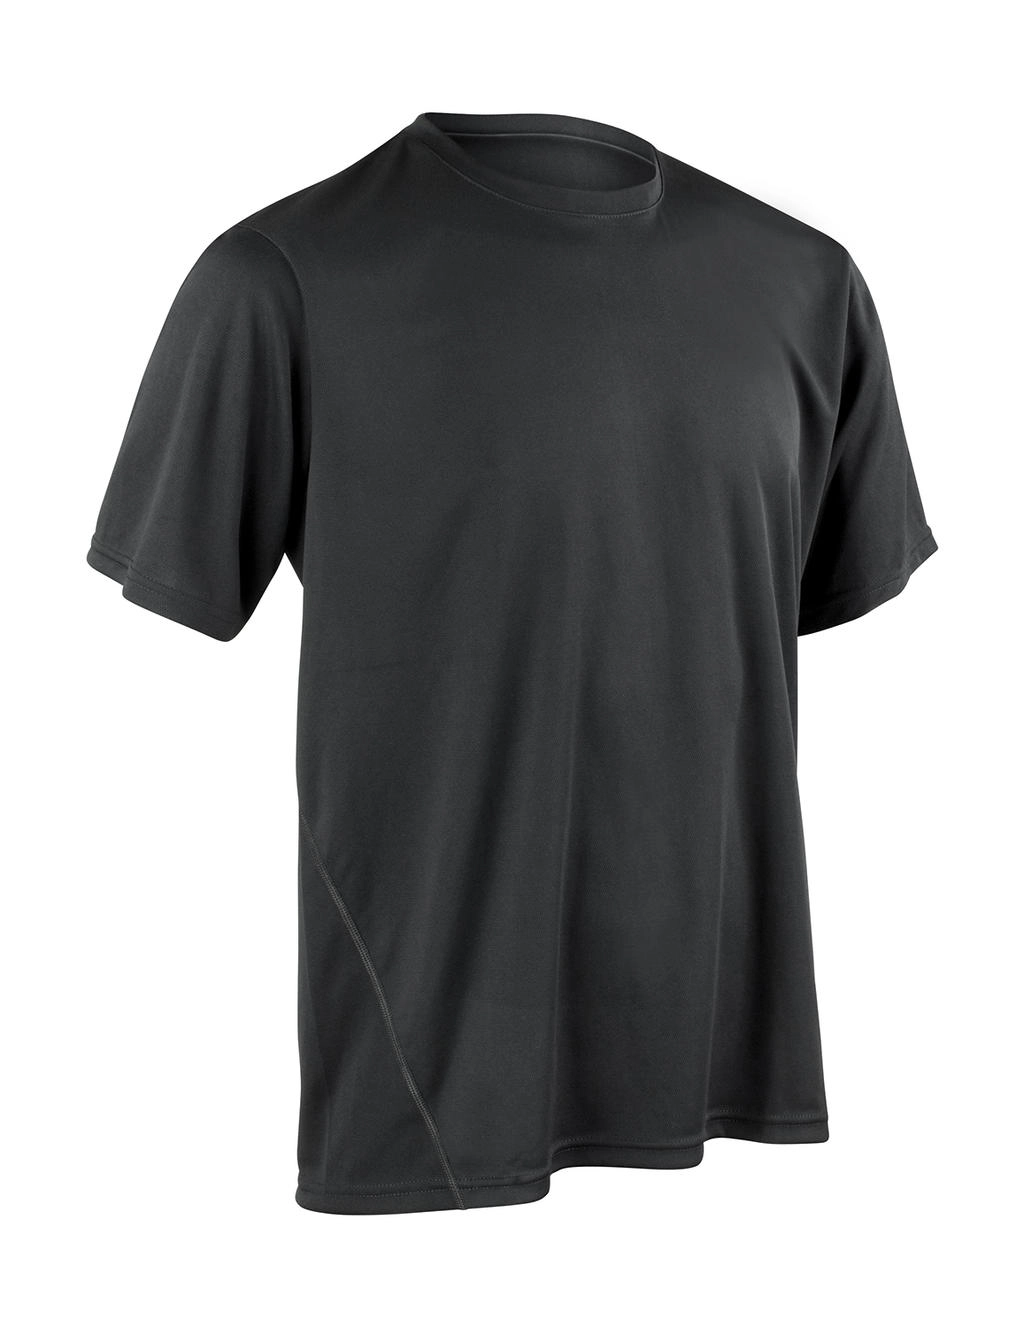 Performance T-Shirt zum Besticken und Bedrucken in der Farbe Black mit Ihren Logo, Schriftzug oder Motiv.